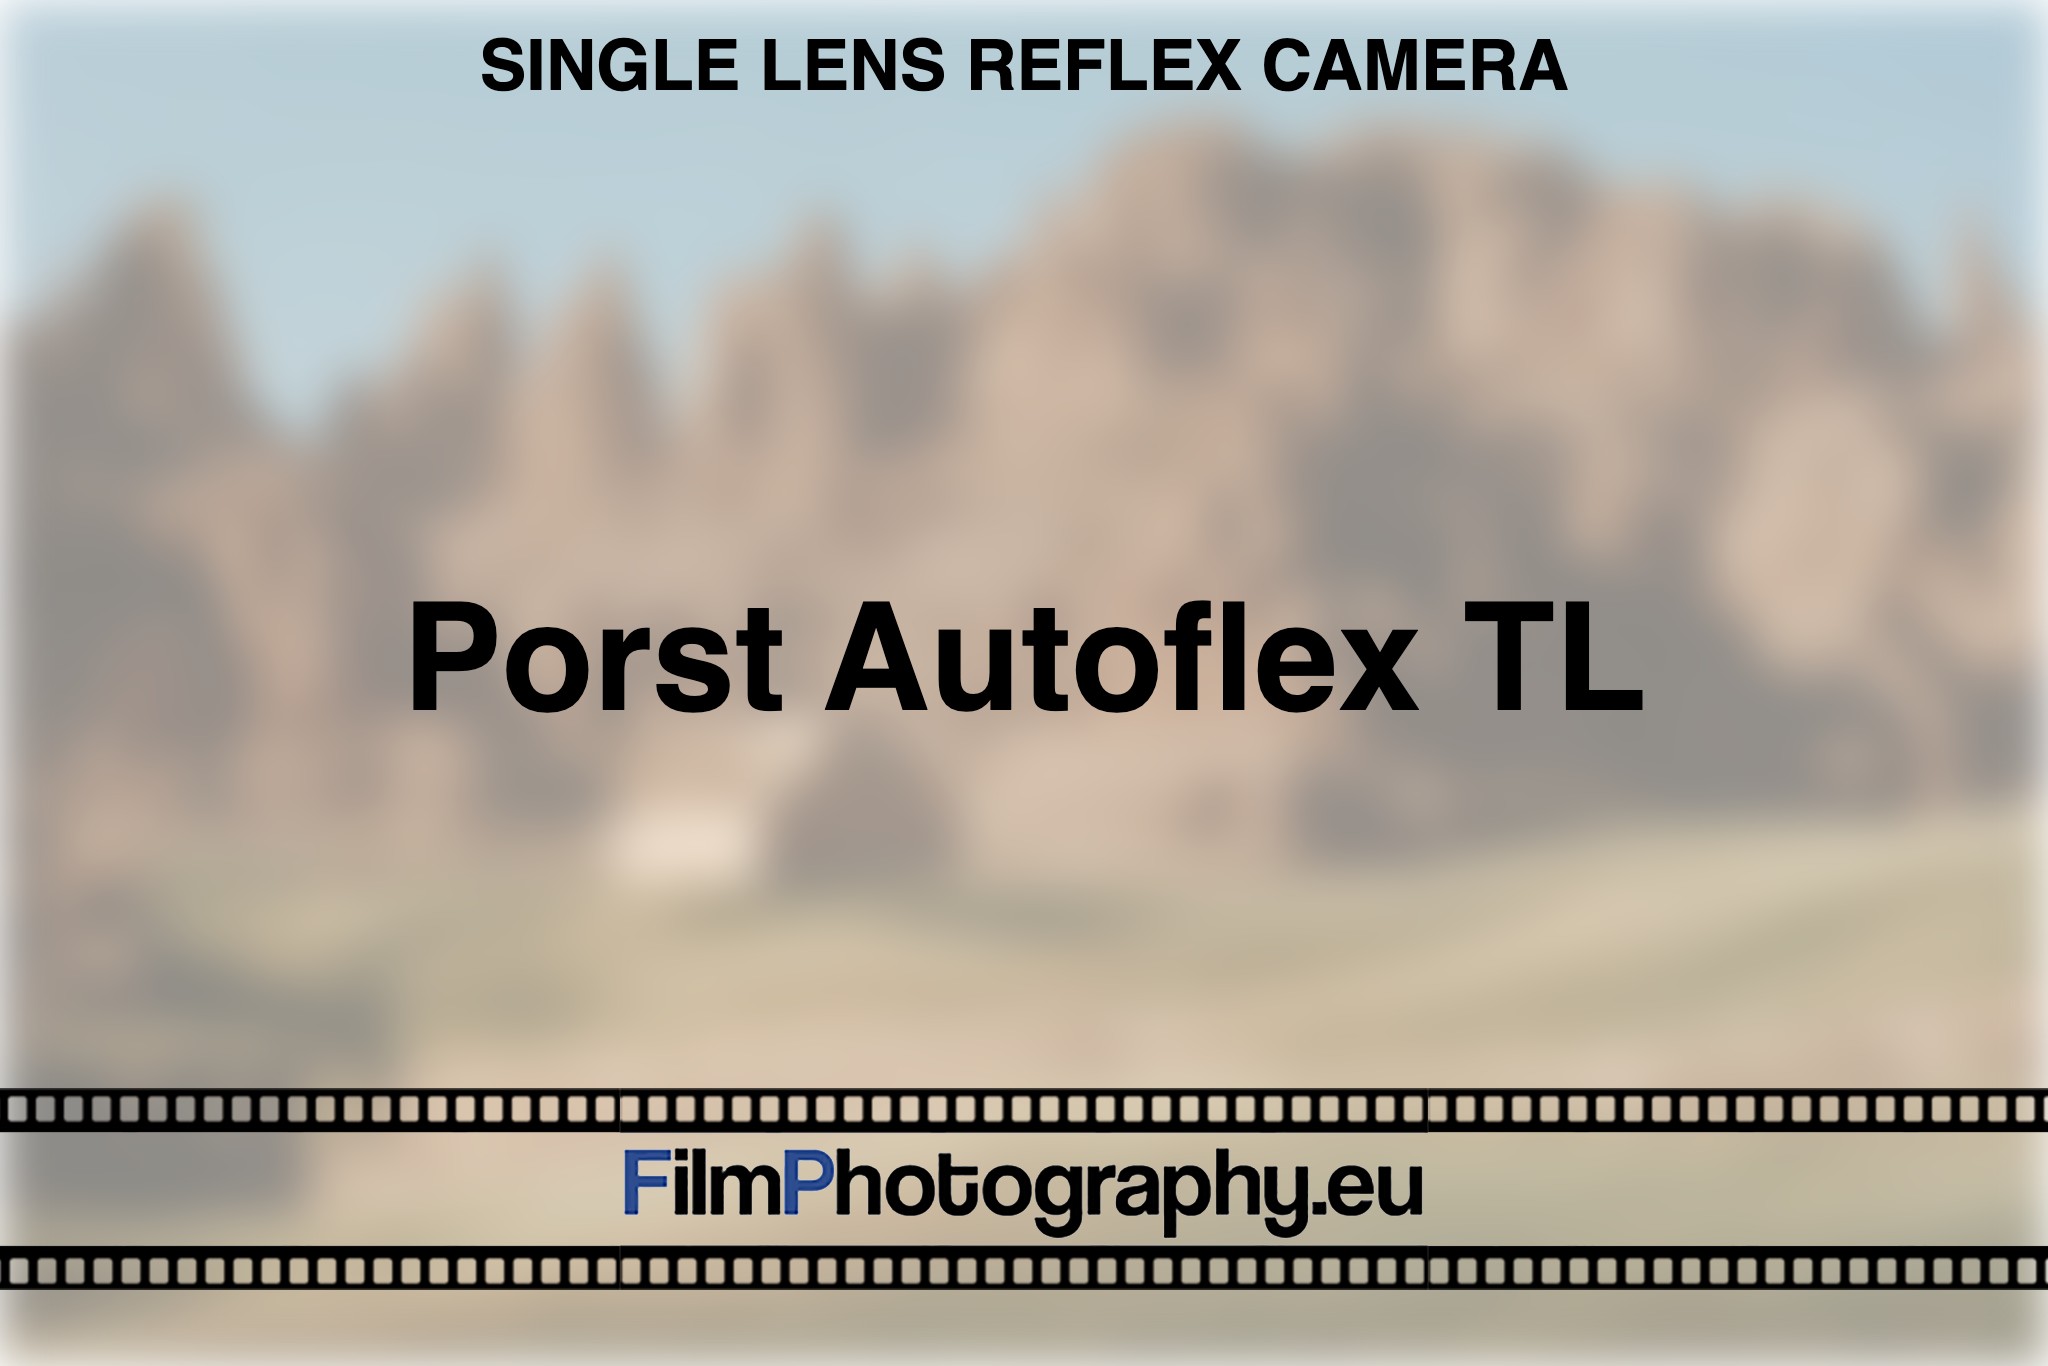 porst-autoflex-tl-single-lens-reflex-camera-bnv